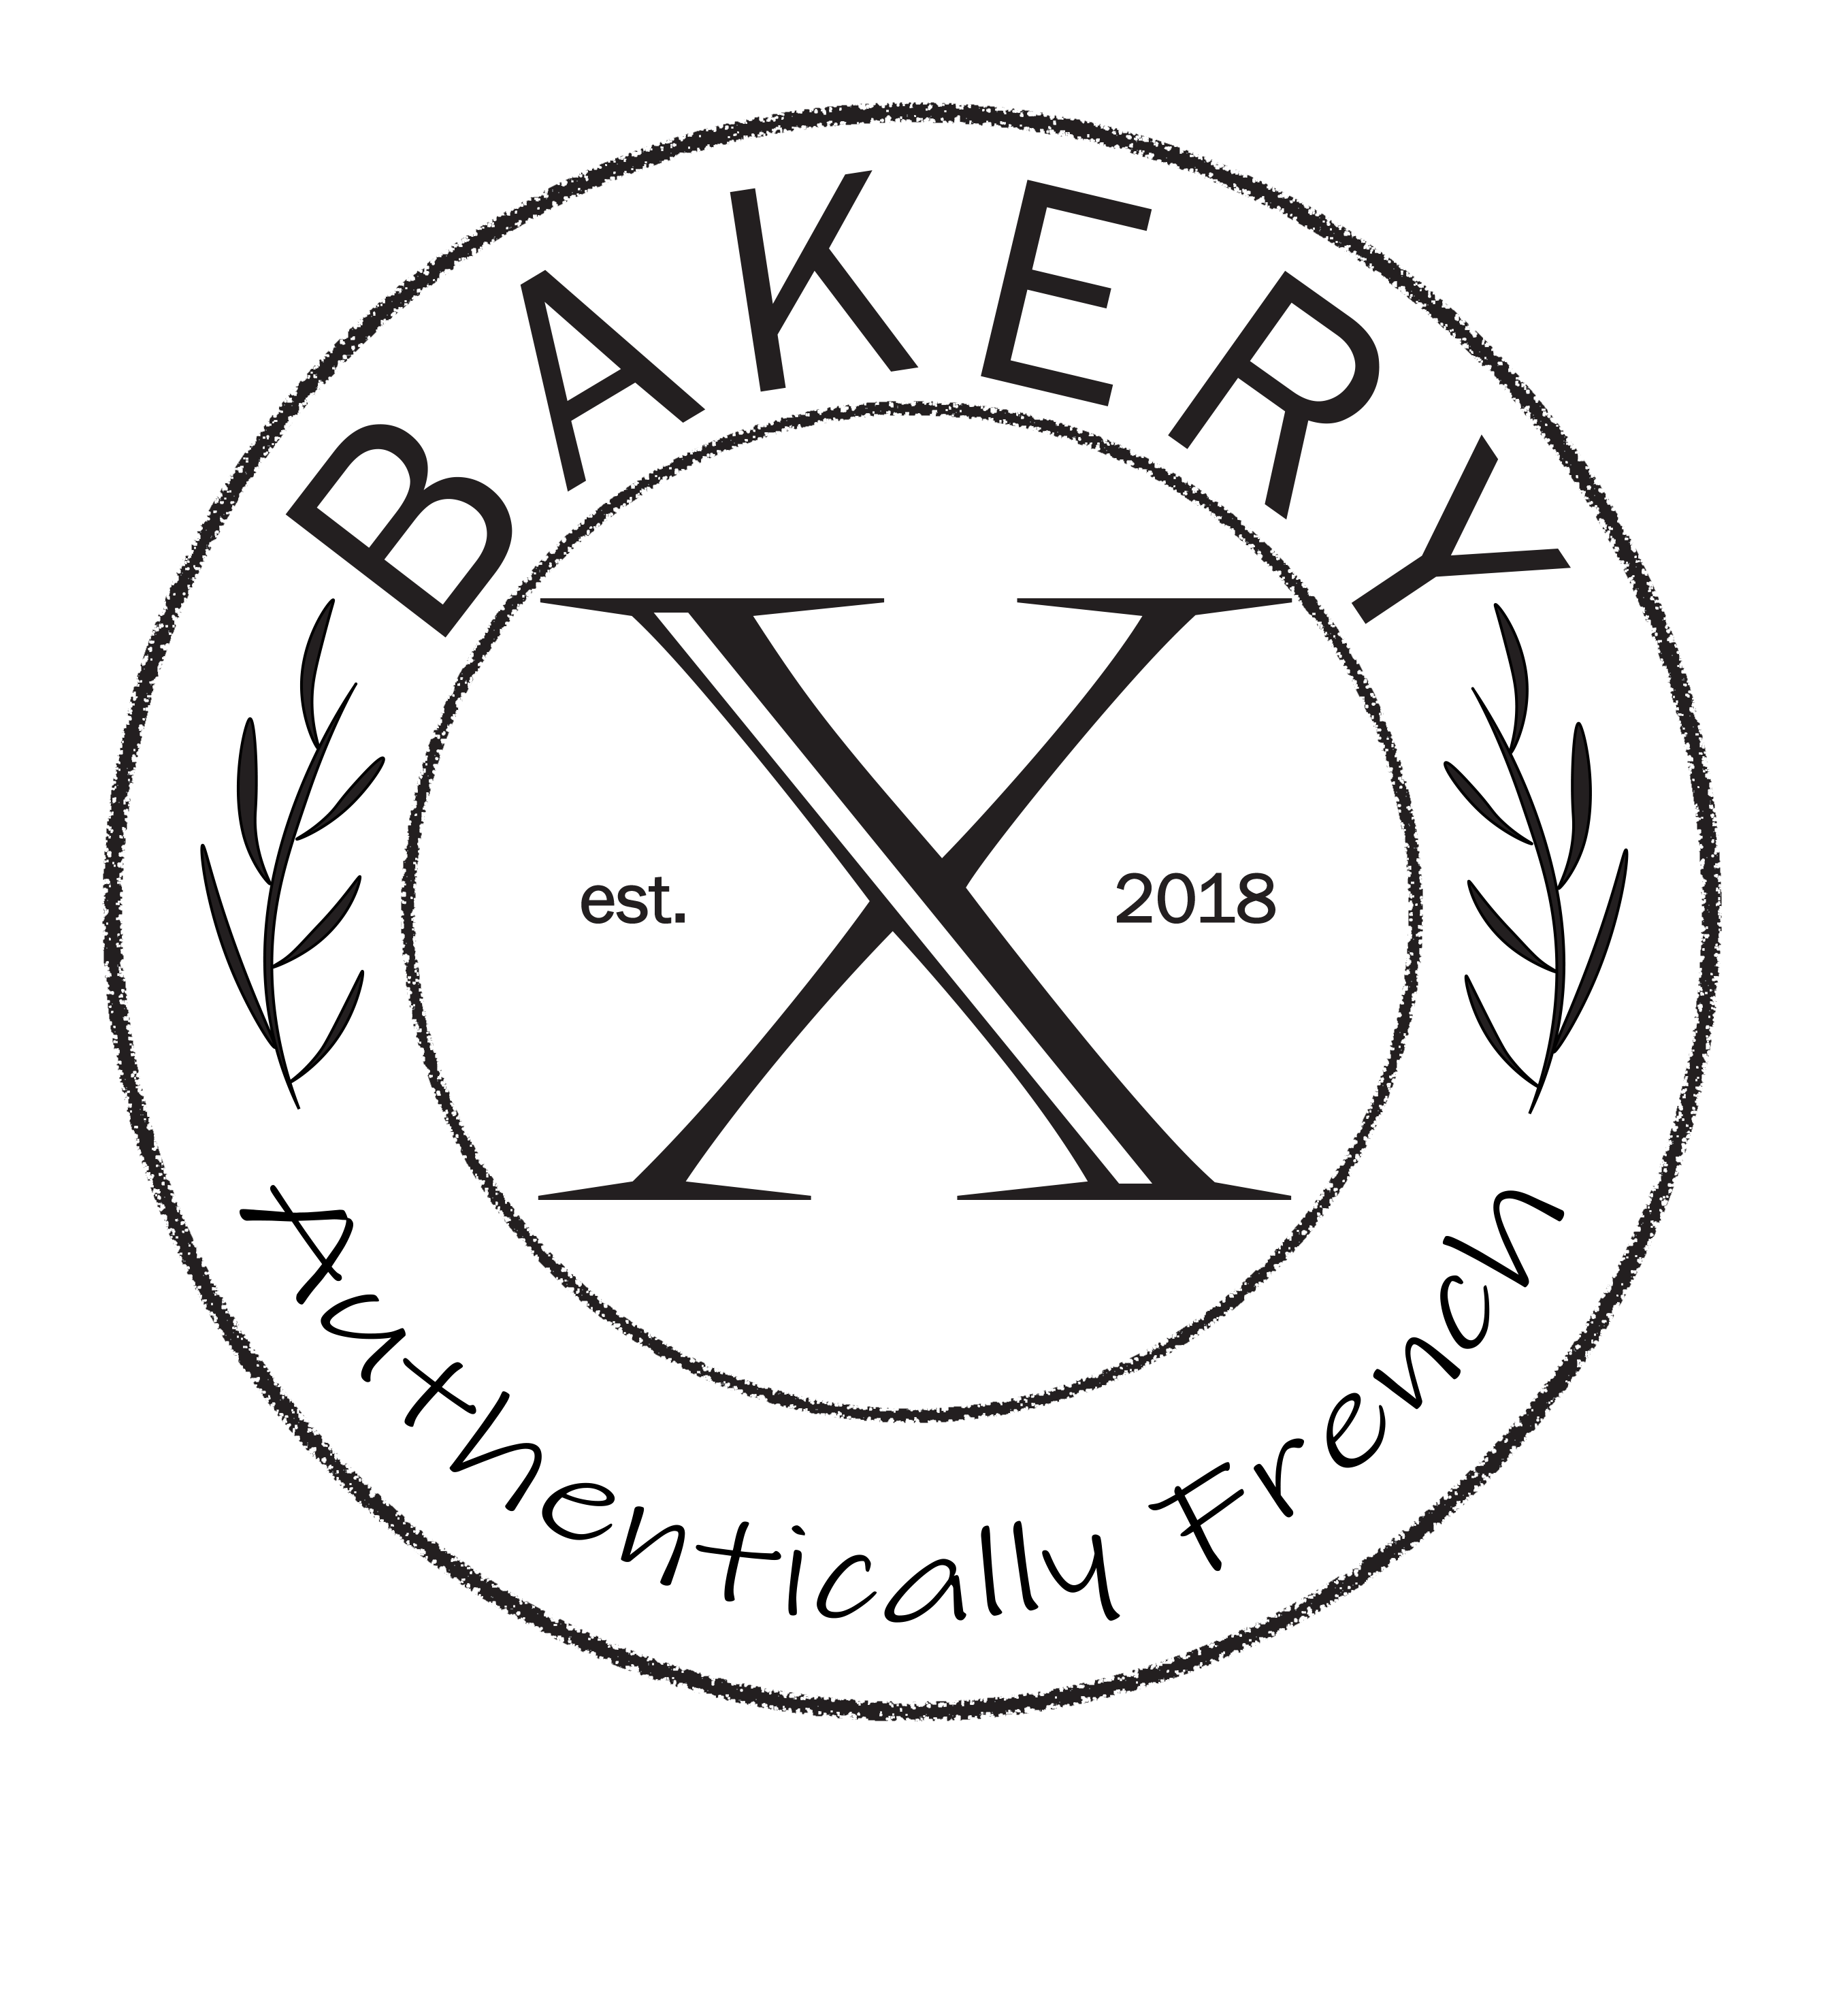 Bakery-X LLC